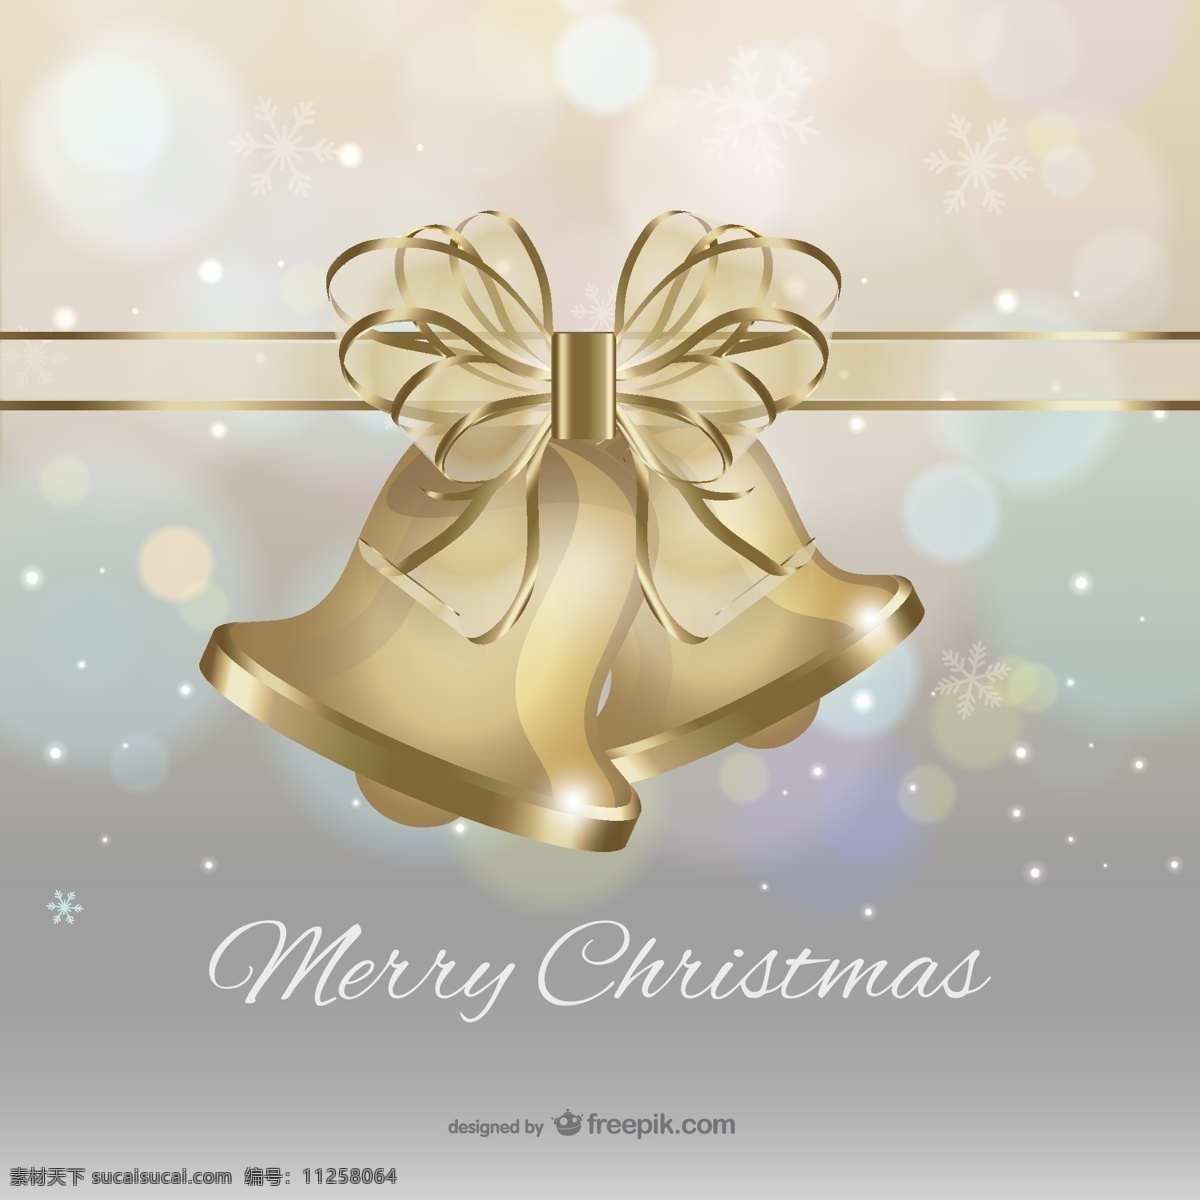 圣诞快乐 圣诞 礼物 蝴蝶结 背景 圣诞卡 圣诞背景 弓 金色 金色的背景 快乐 祝福 圣诞的钟声 钟声 圣诞的祝福 铃儿响叮当 灰色